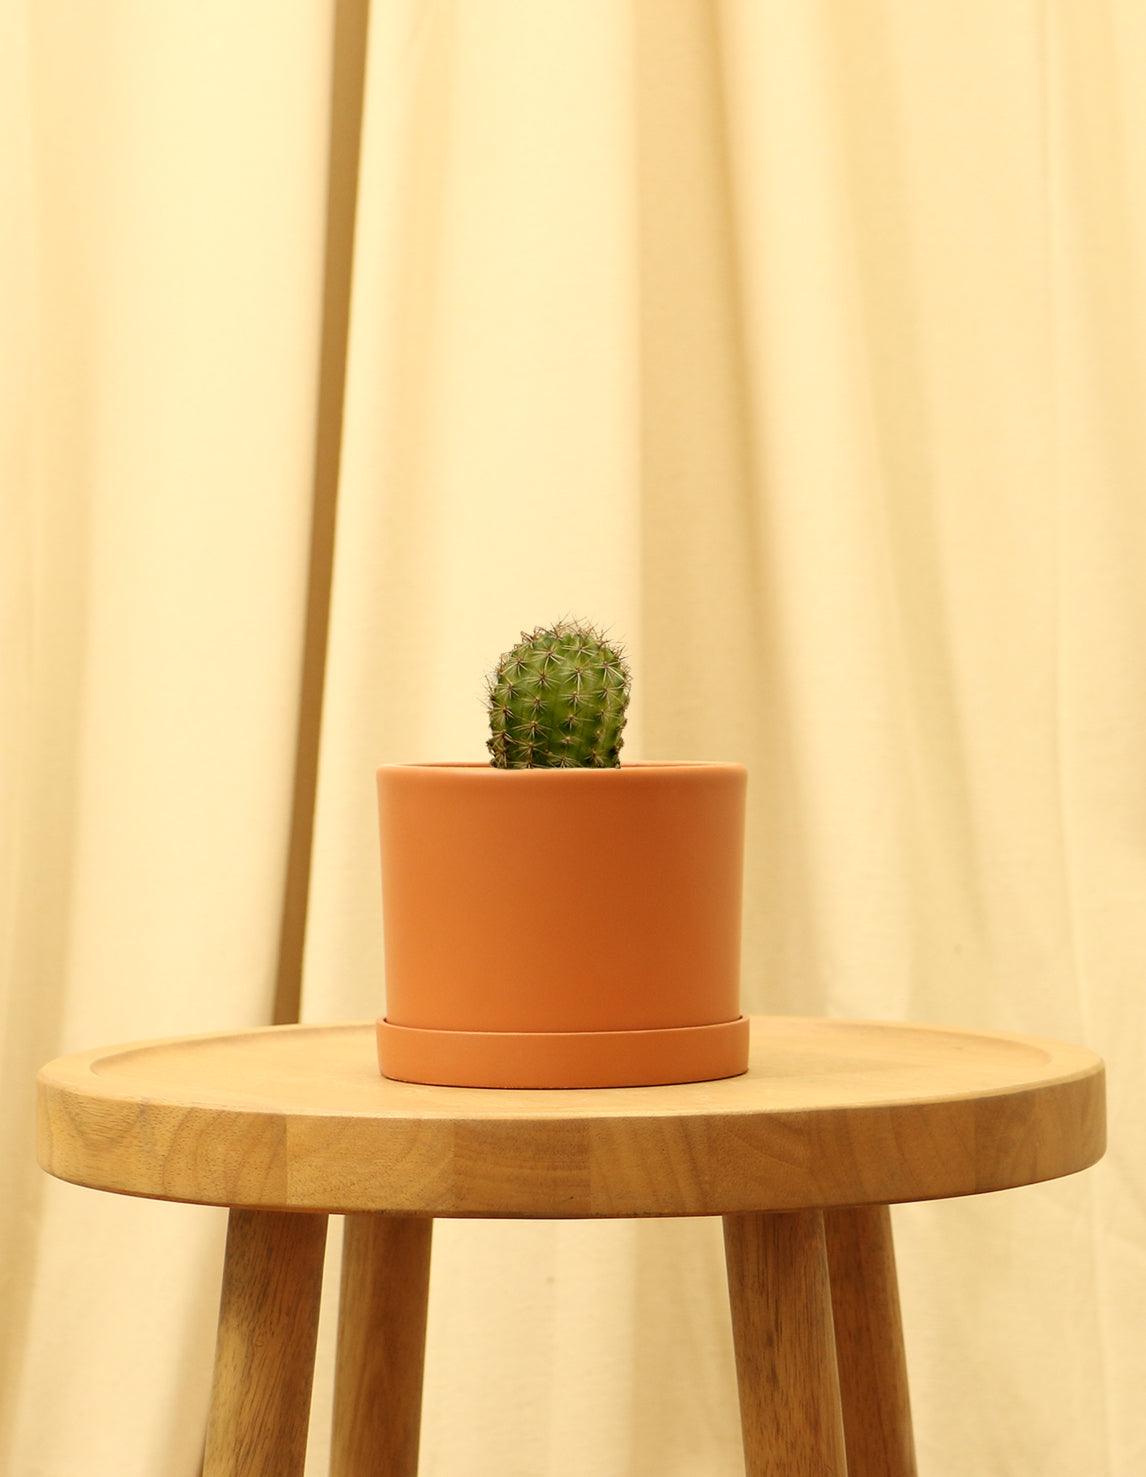 Small Torch Cactus in orange pot.